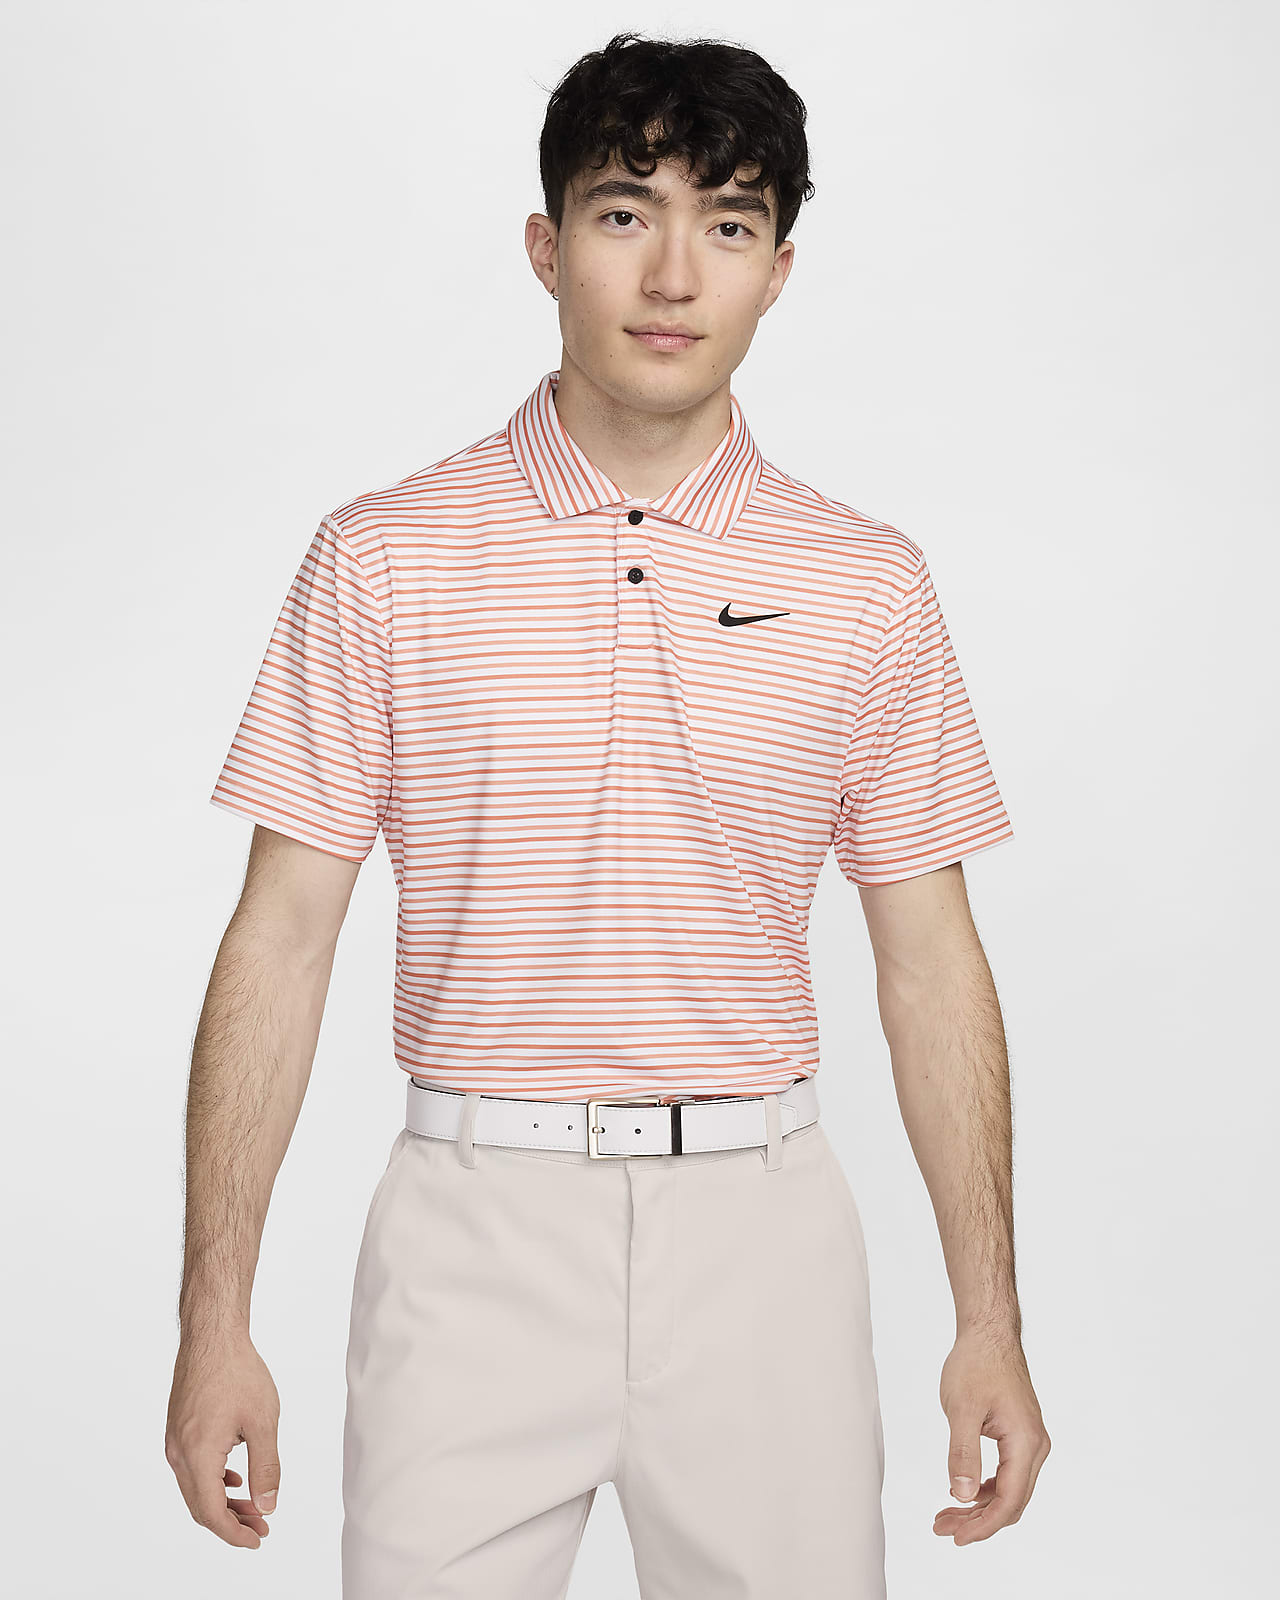 Nike Tour Men's Dri-FIT Striped Golf Polo